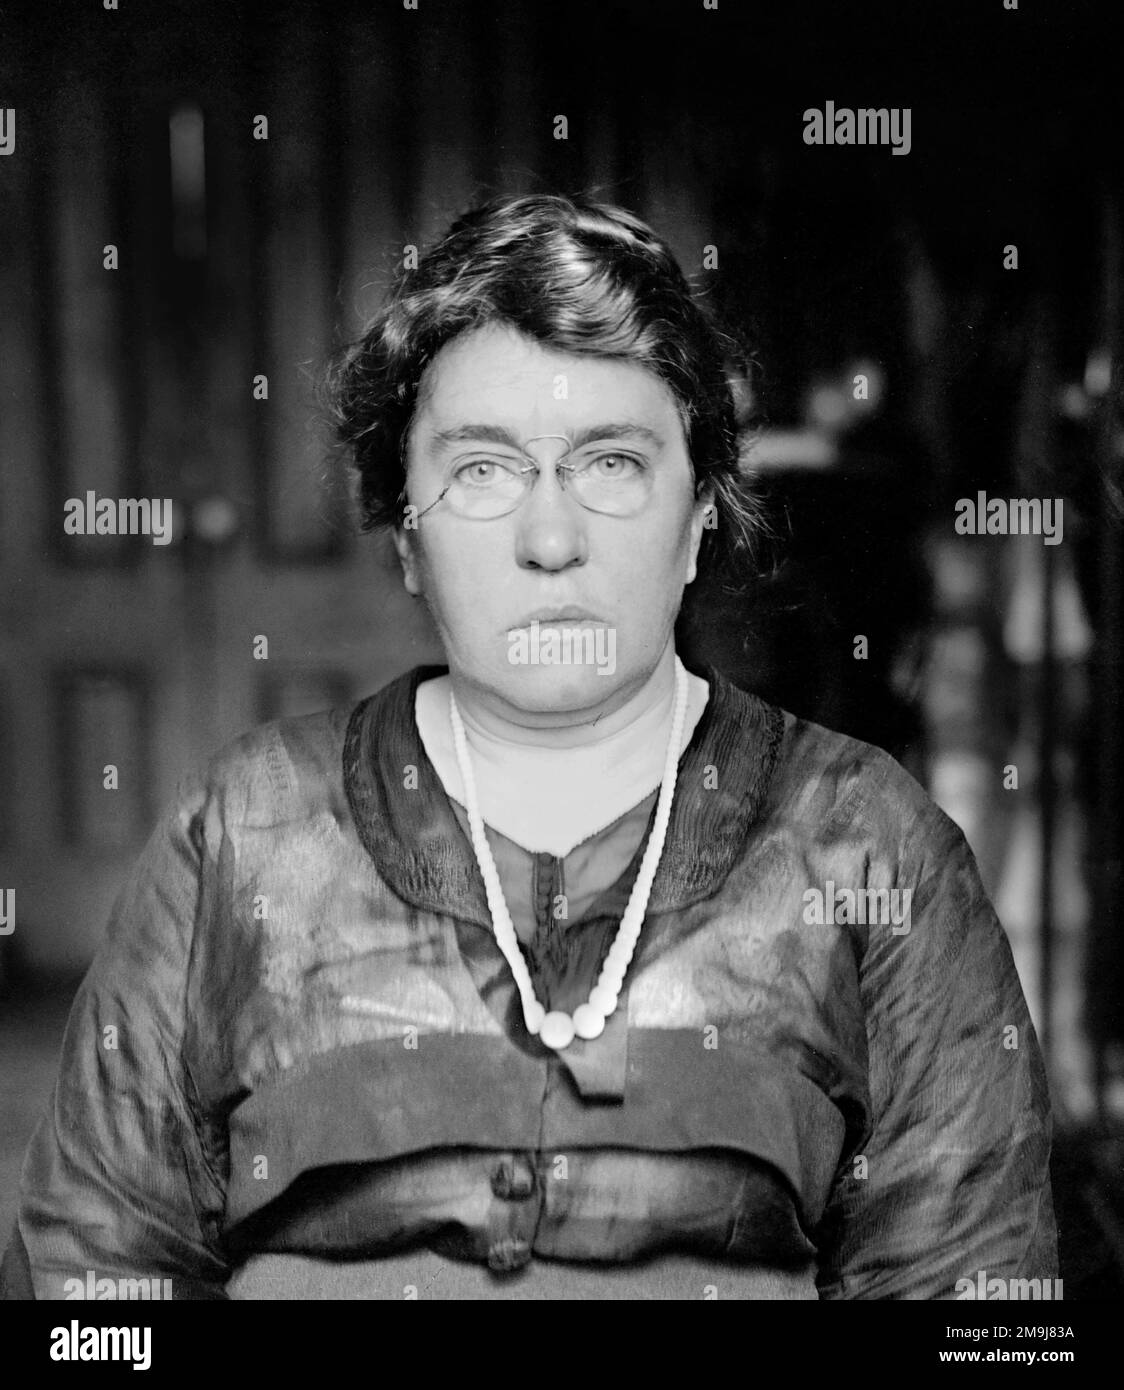 Emma Goldman. Portrait de l'anarchiste et activiste politique russe Emma Goldman (1869-1940), bain News Service, c. 1915-1920 Banque D'Images